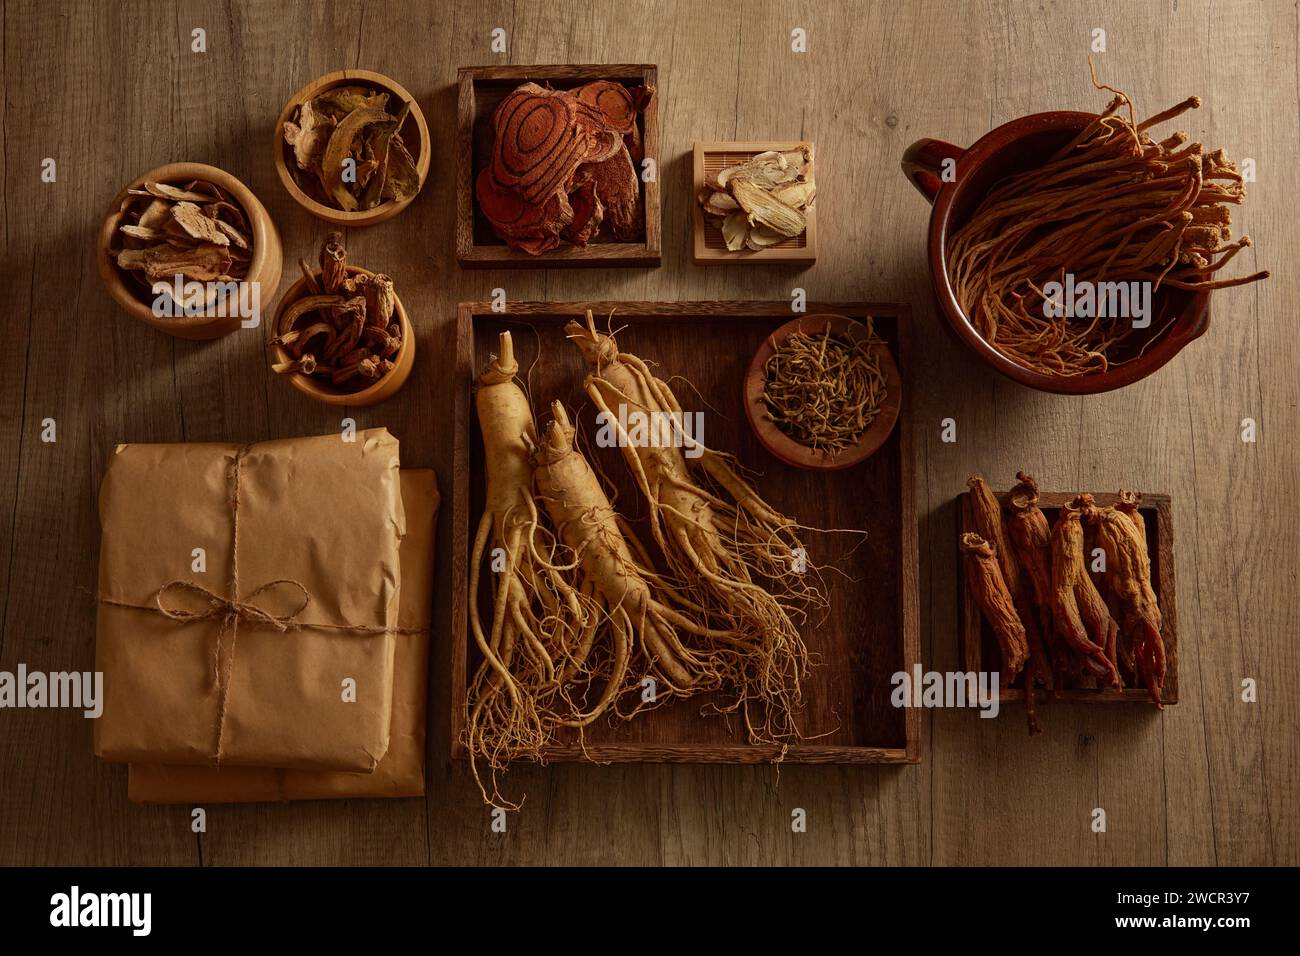 De nombreux types de médecine traditionnelle chinoise sont disposés à l'intérieur de plateaux en bois et de bols sur la table. Pour la publicité de médecine, la photographie traditi Banque D'Images